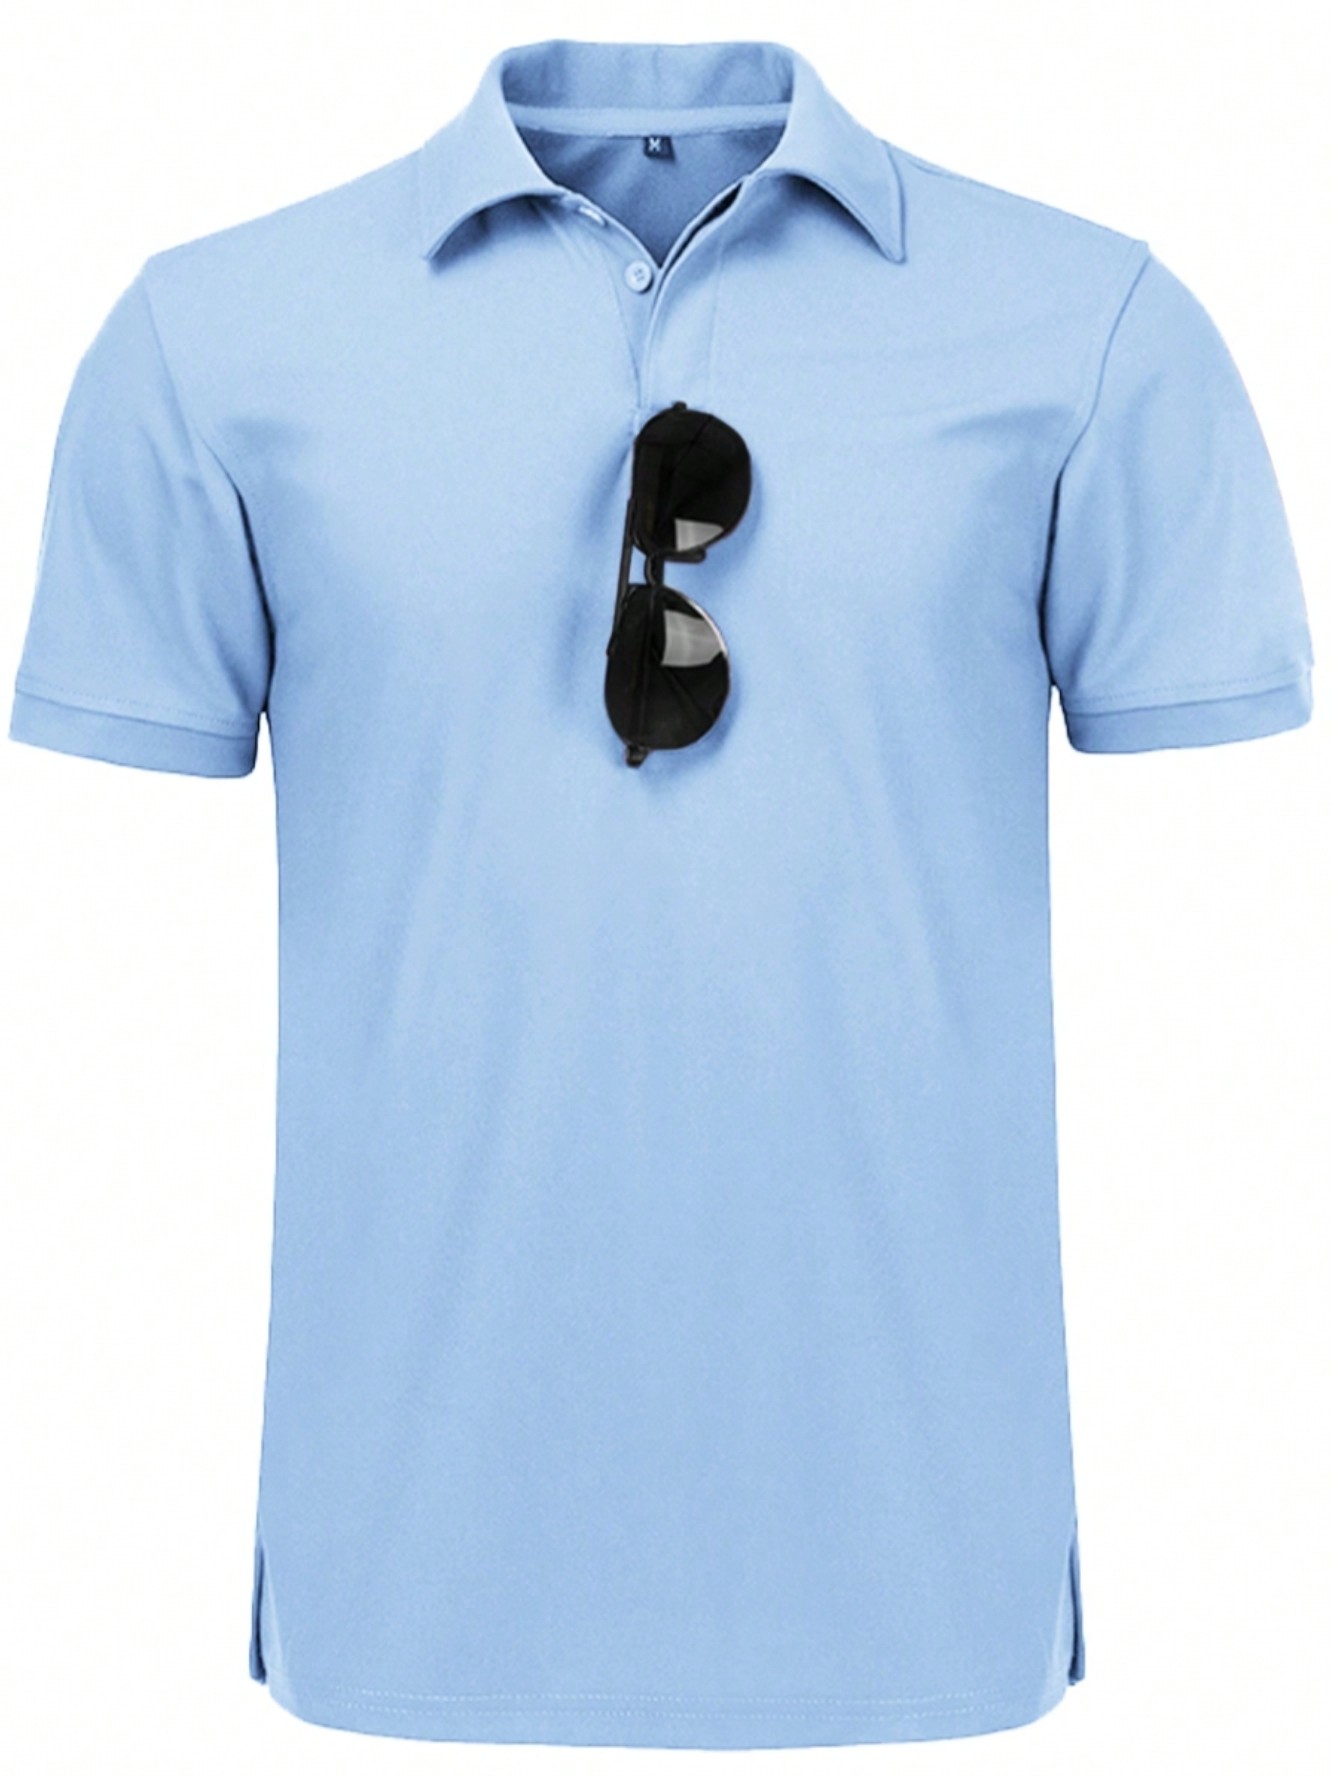 Мужская рубашка поло с коротким рукавом для отдыха, голубые рубашка поло мужская с длинным рукавом деловая тенниска на пуговицах роскошная рубашка поло с 3d рисунком карты весна осень